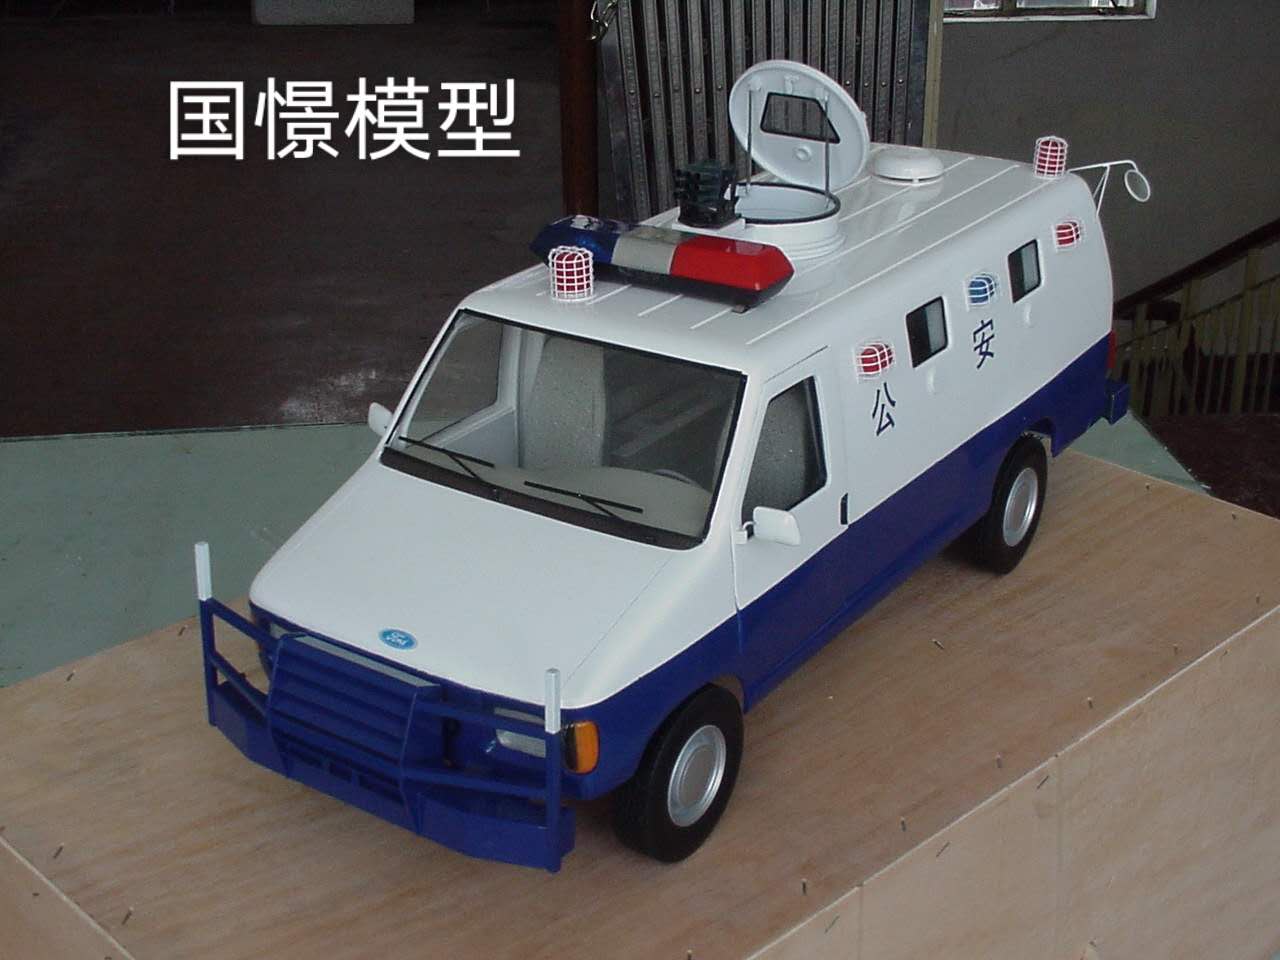 亚东县车辆模型